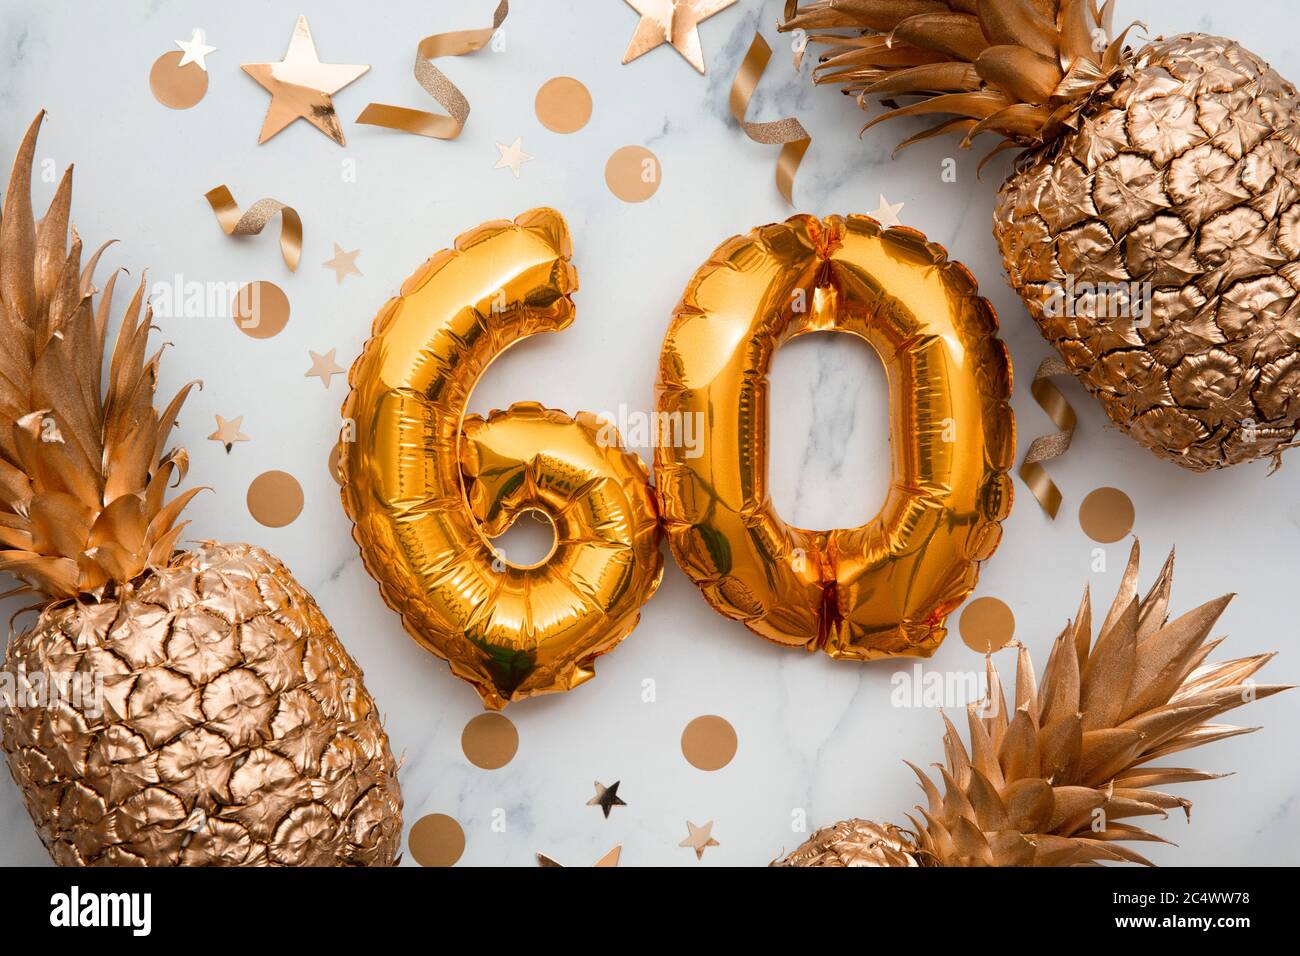 tarjeta de celebración de 60 cumpleaños con globos de papel de